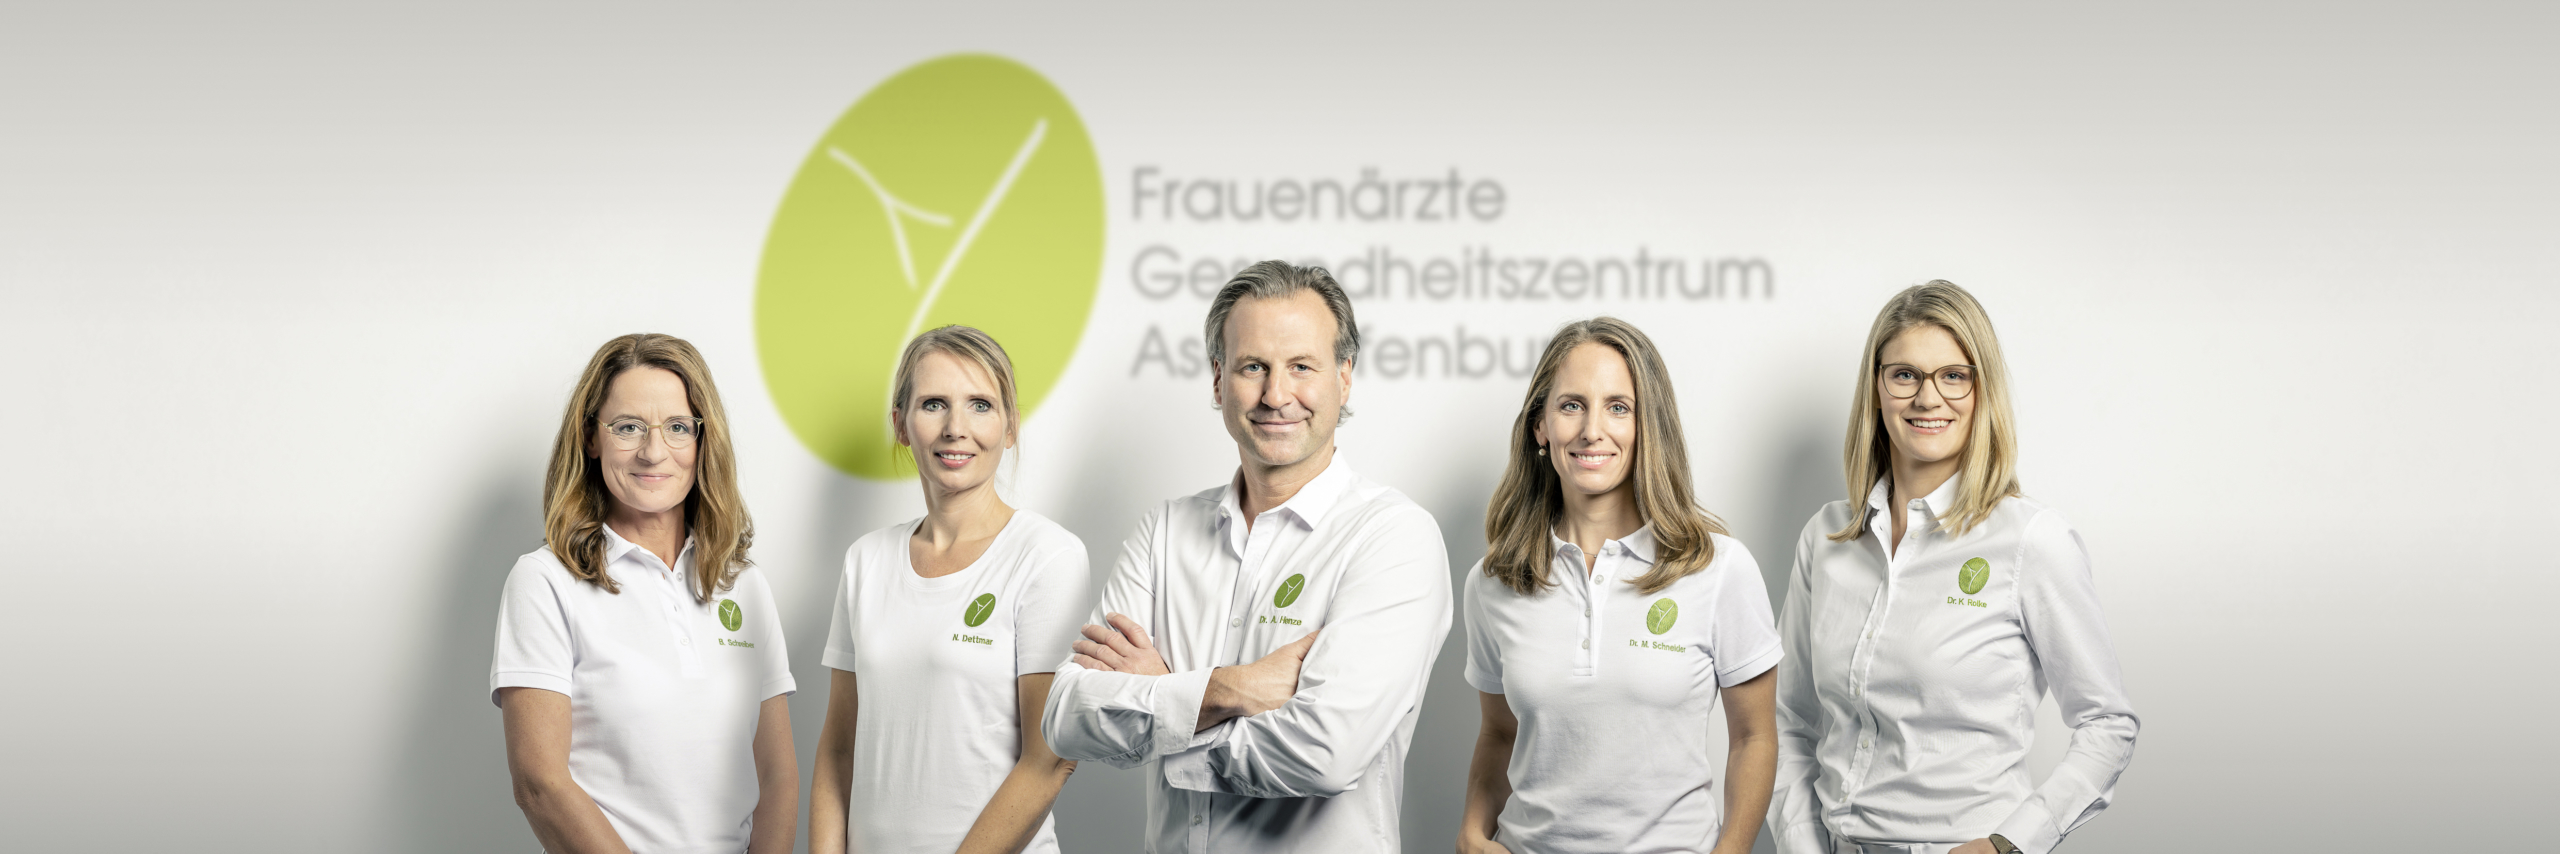 Ärzte-Team vom Frauenärzte Gesundheitszentrum Aschaffenburg